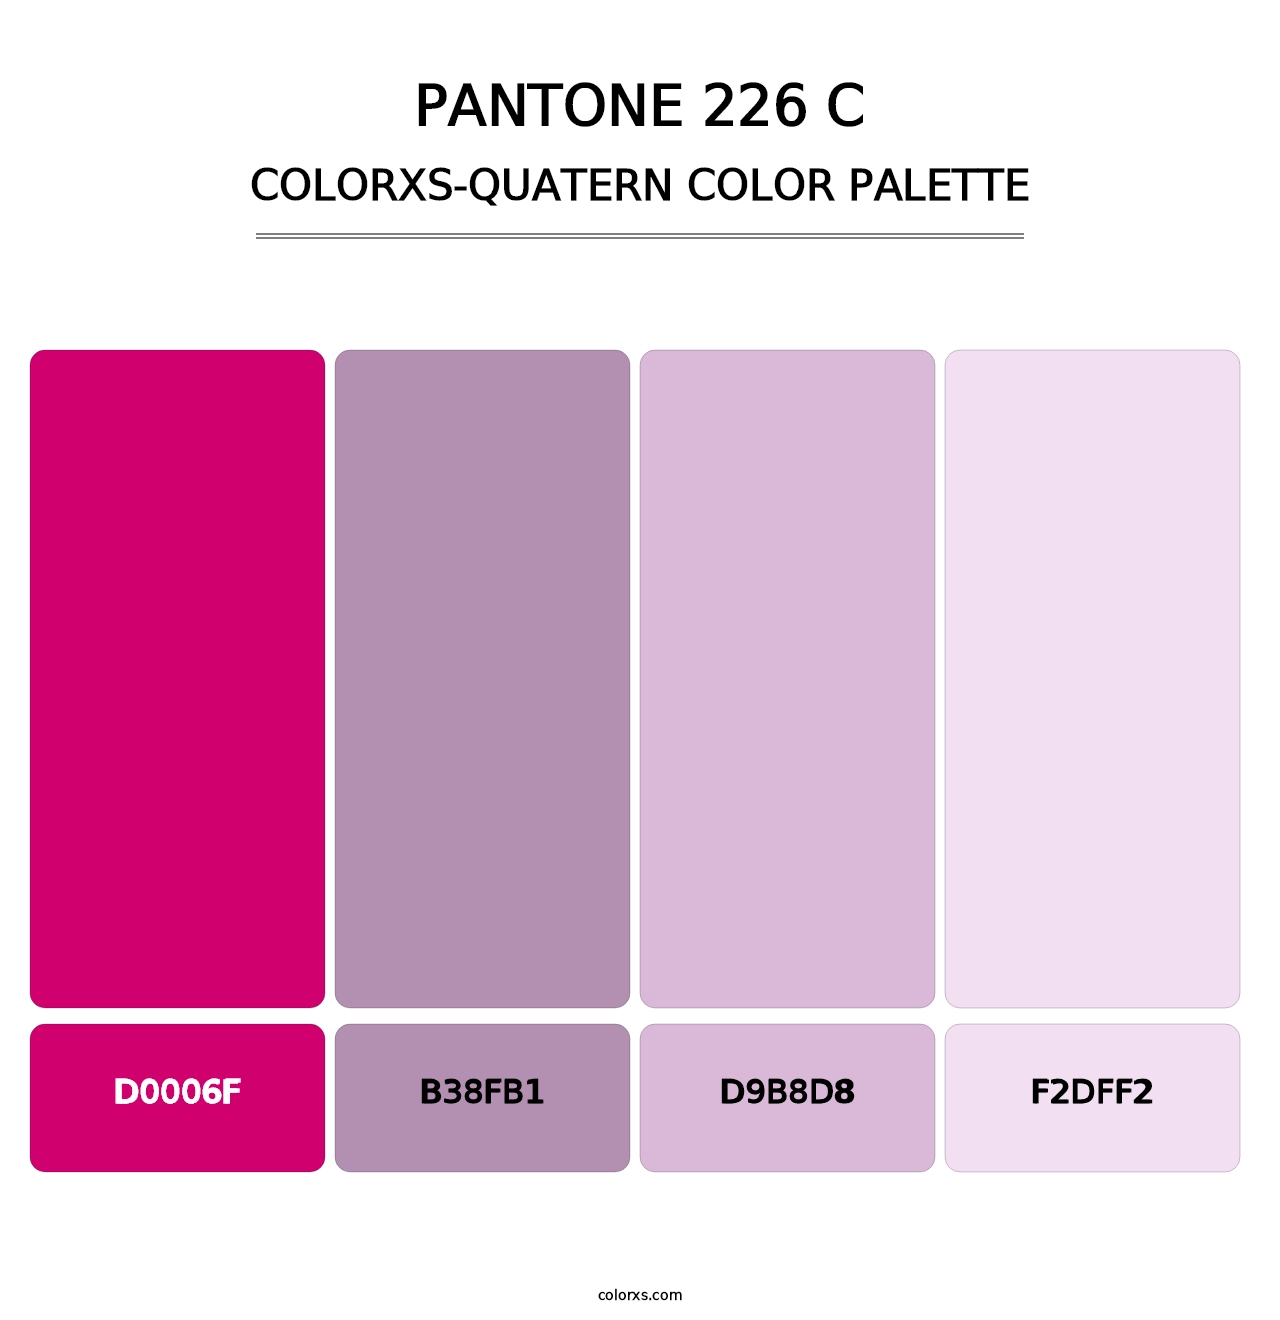 PANTONE 226 C - Colorxs Quatern Palette